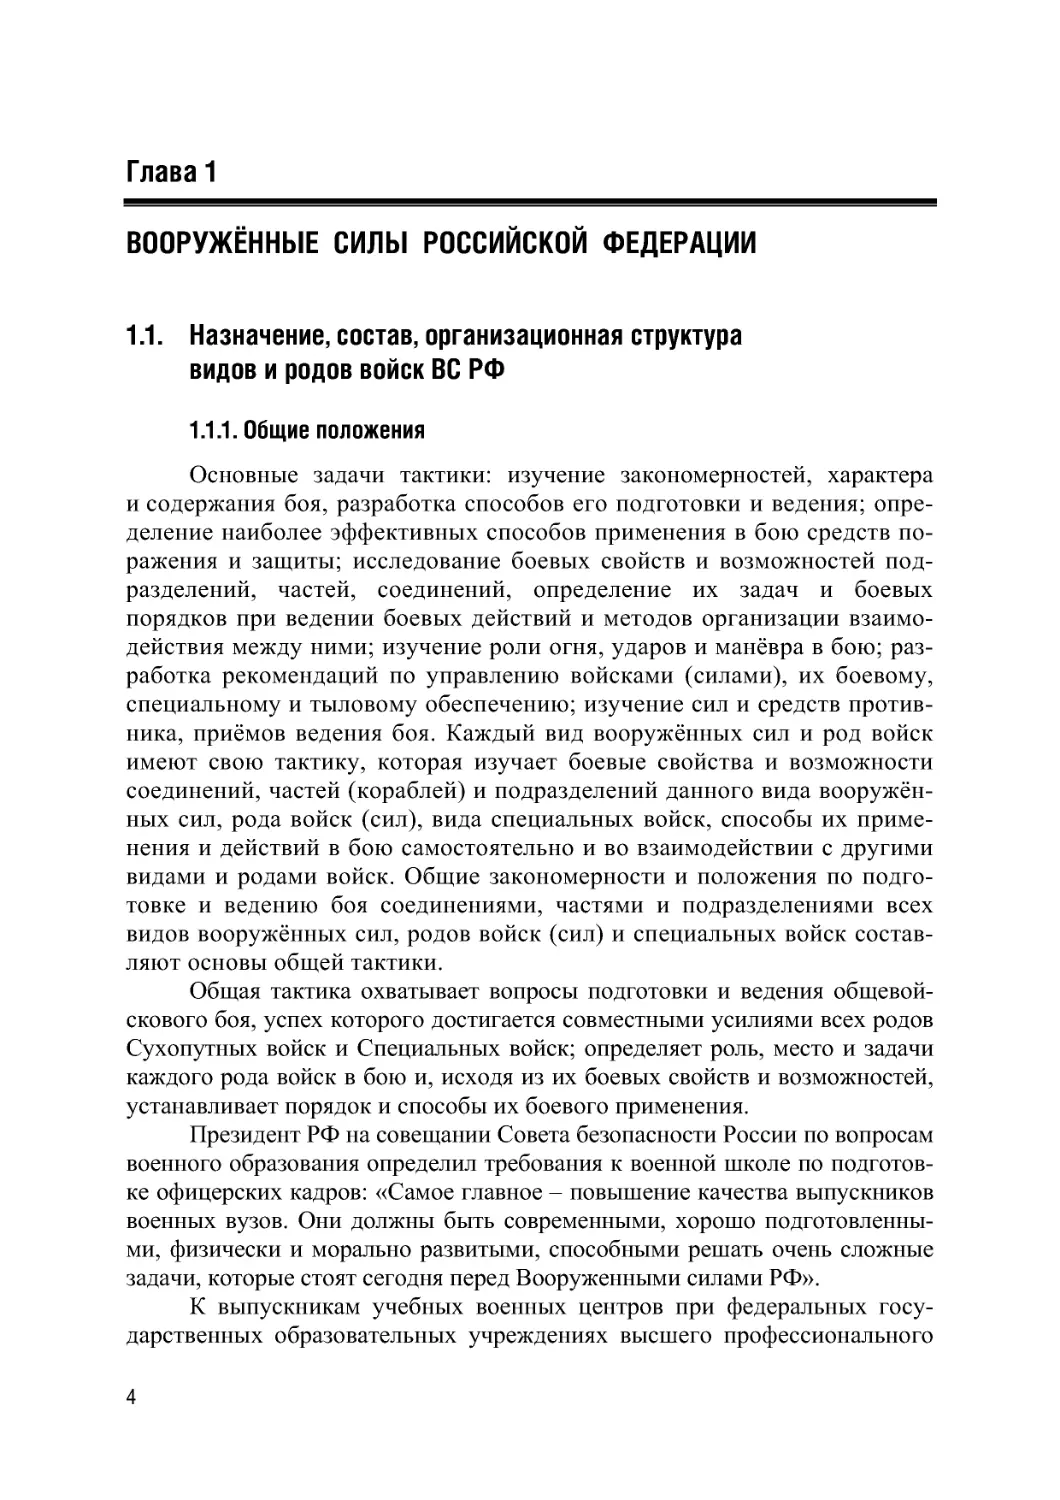 Глава 1. Вооружённые силы Российской Федерации